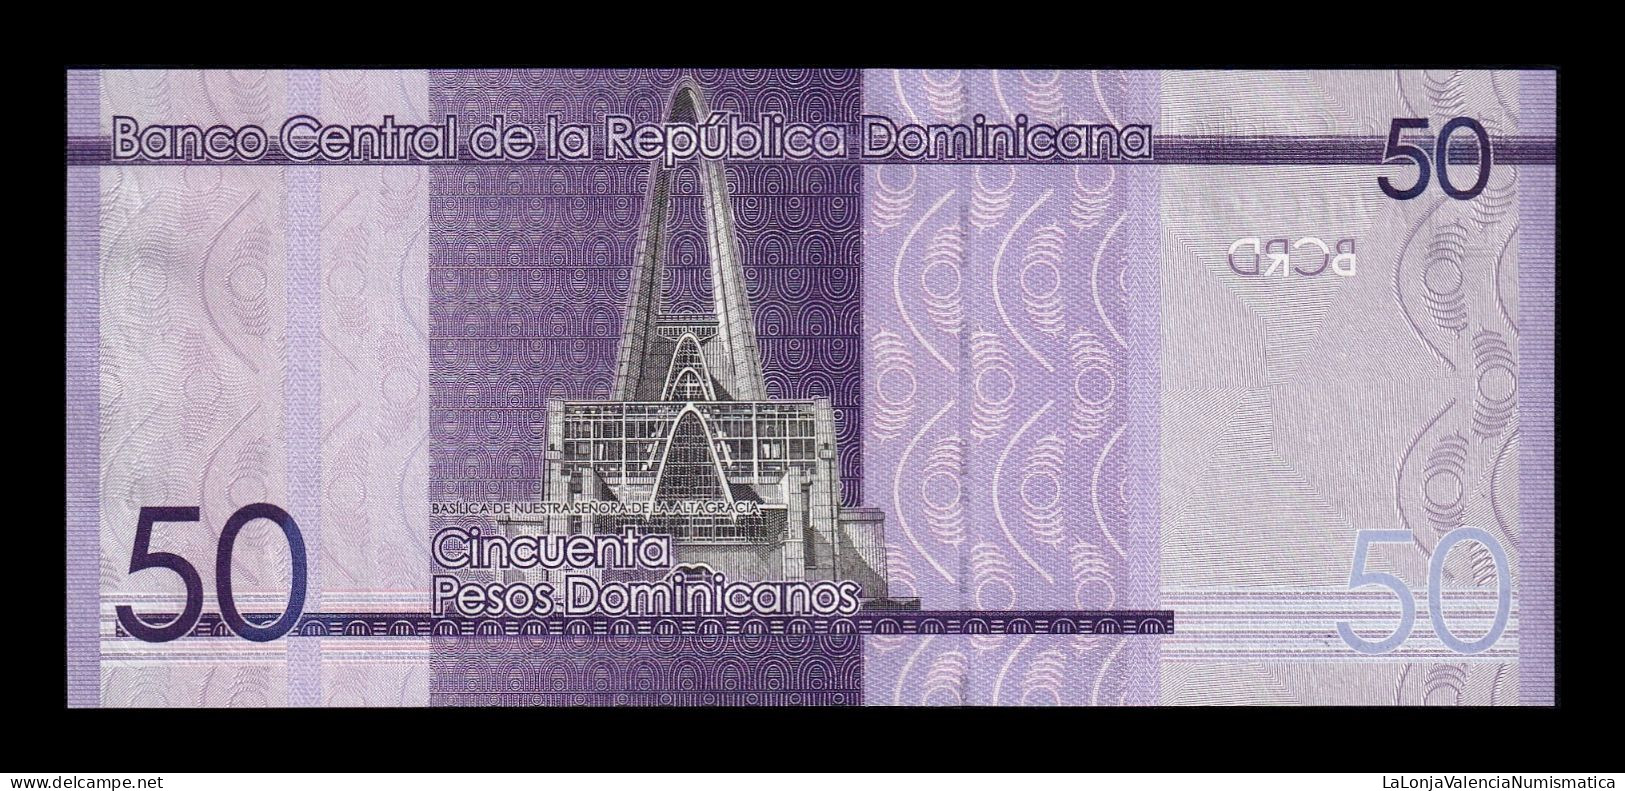 República Dominicana 50 Pesos Dominicanos 2019 Pick 189a Sc Unc - Repubblica Dominicana